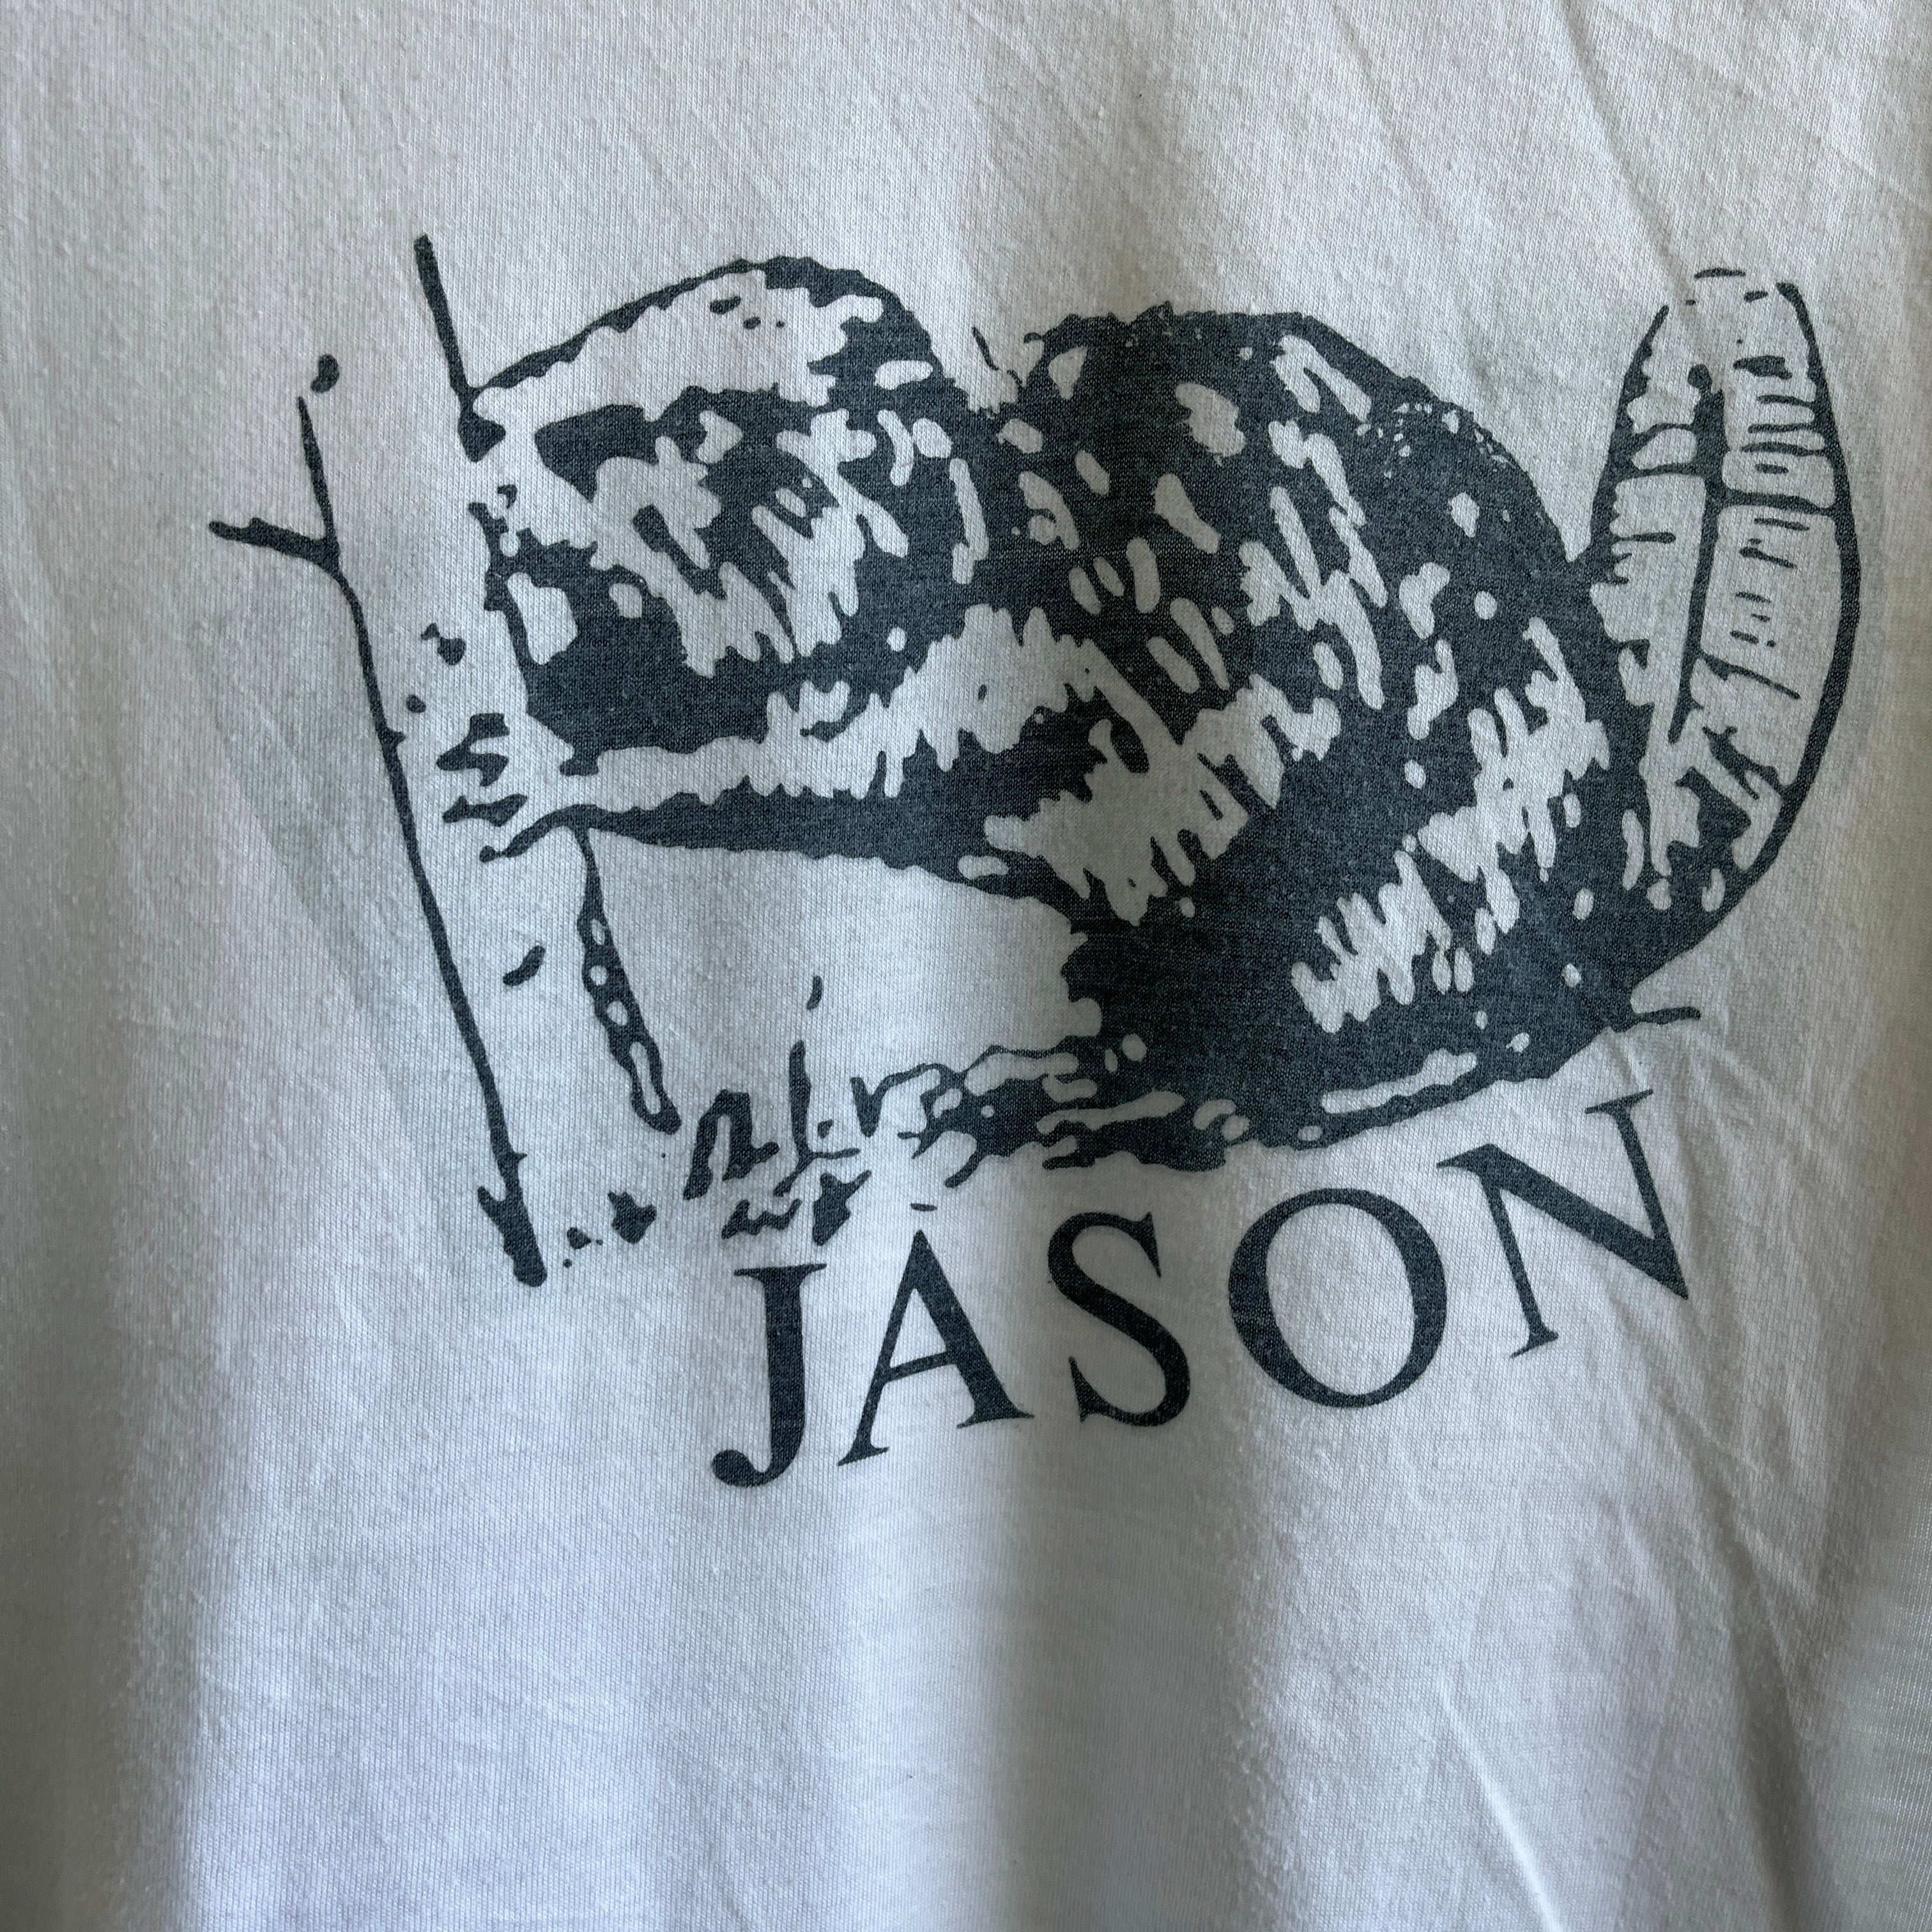 T-shirt Jason le castor des années 1990 - WOW